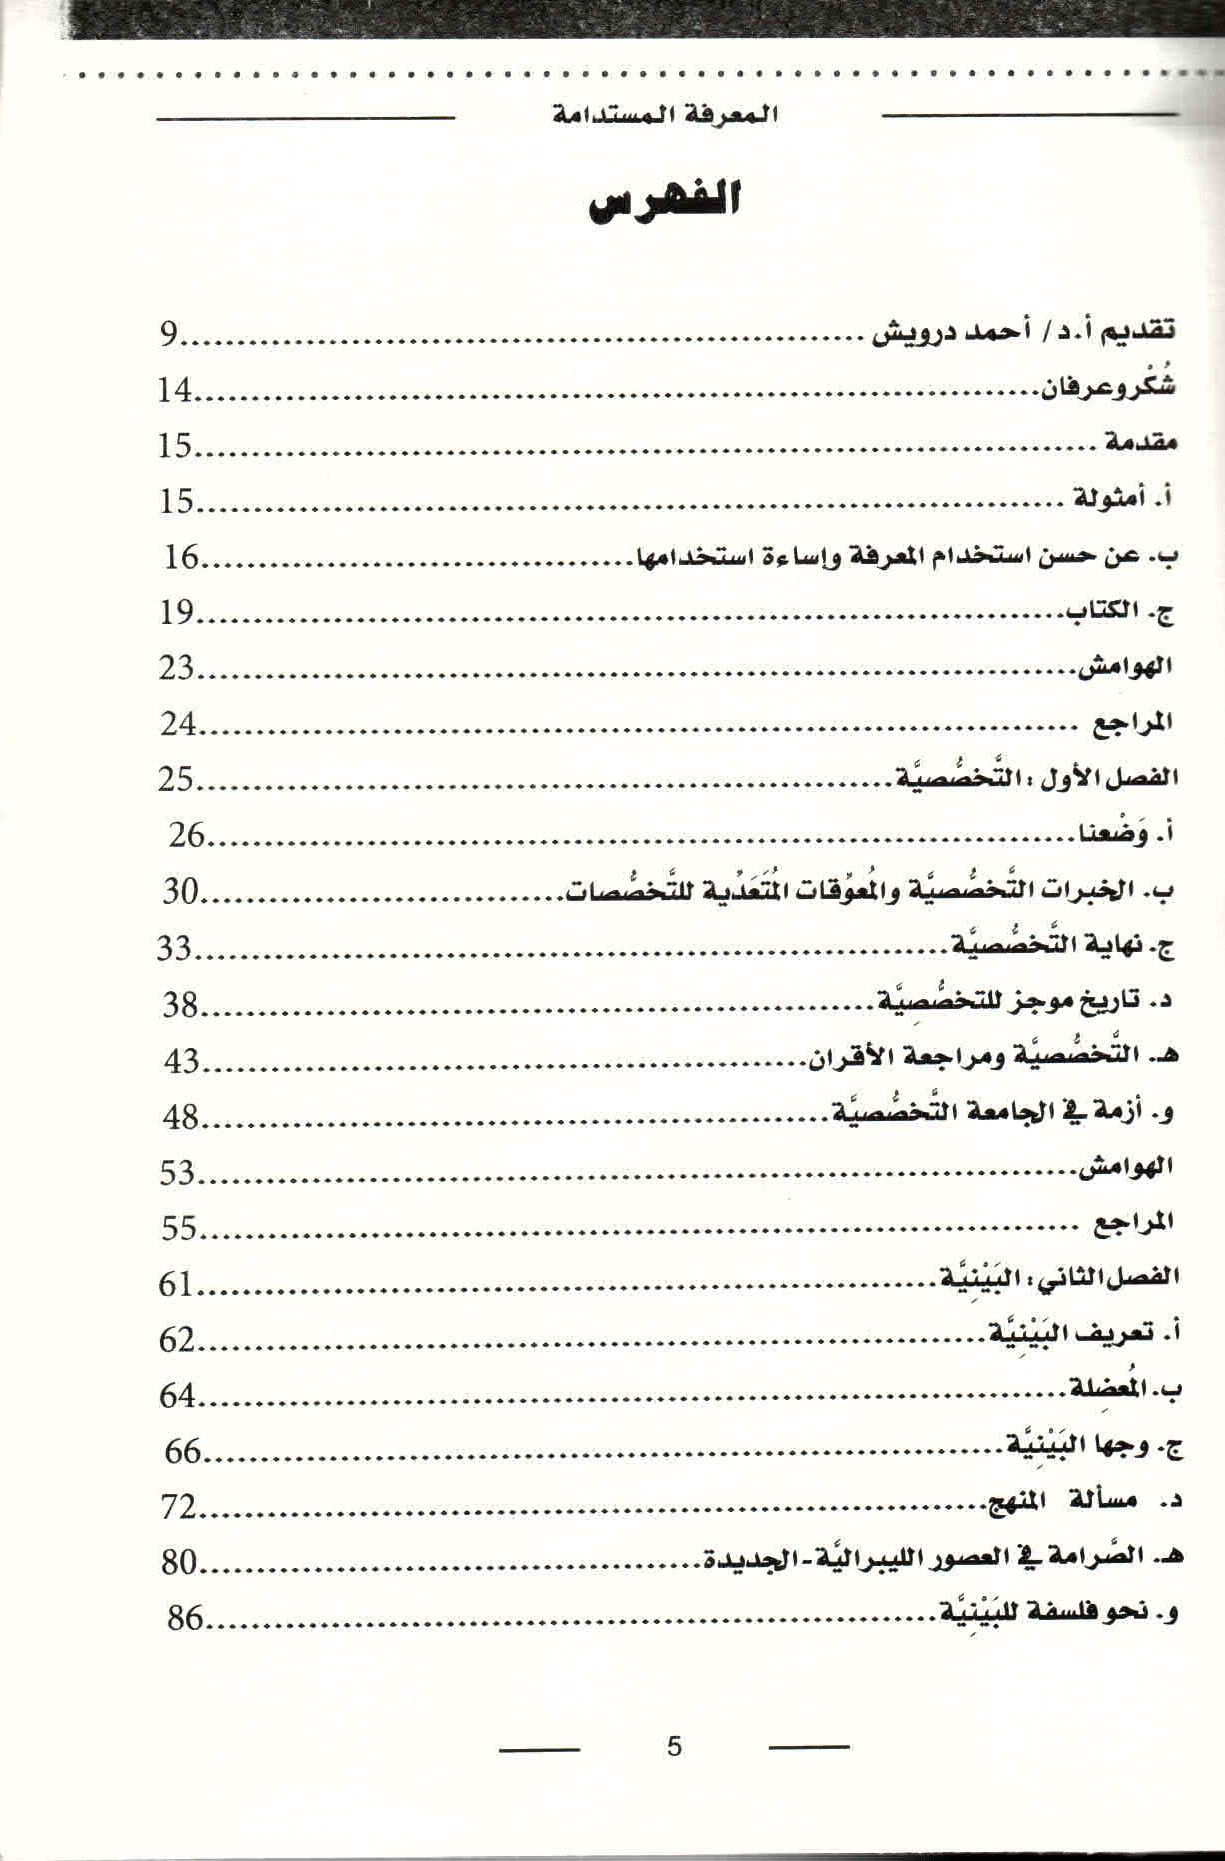 ص. 5 قائمة محتويات كتاب المعرفة المستدامة.